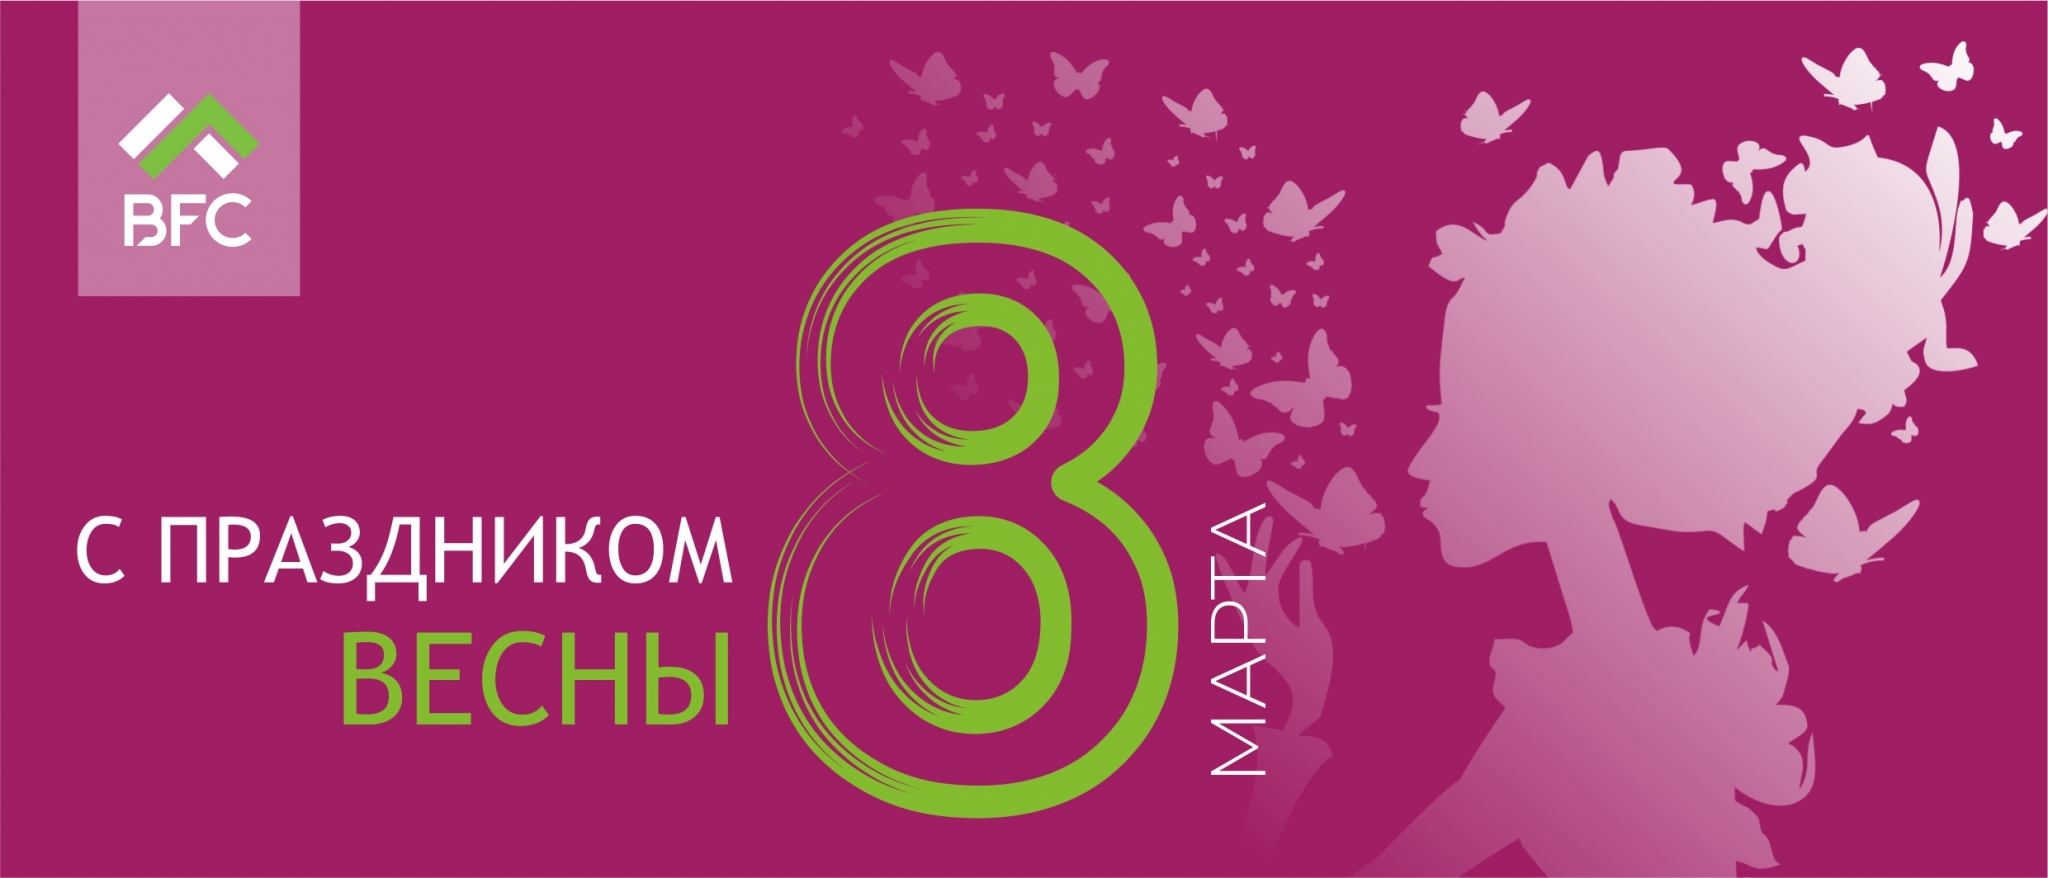 ОАО "Белорусская лесная компания" поздравляет с 8 марта!